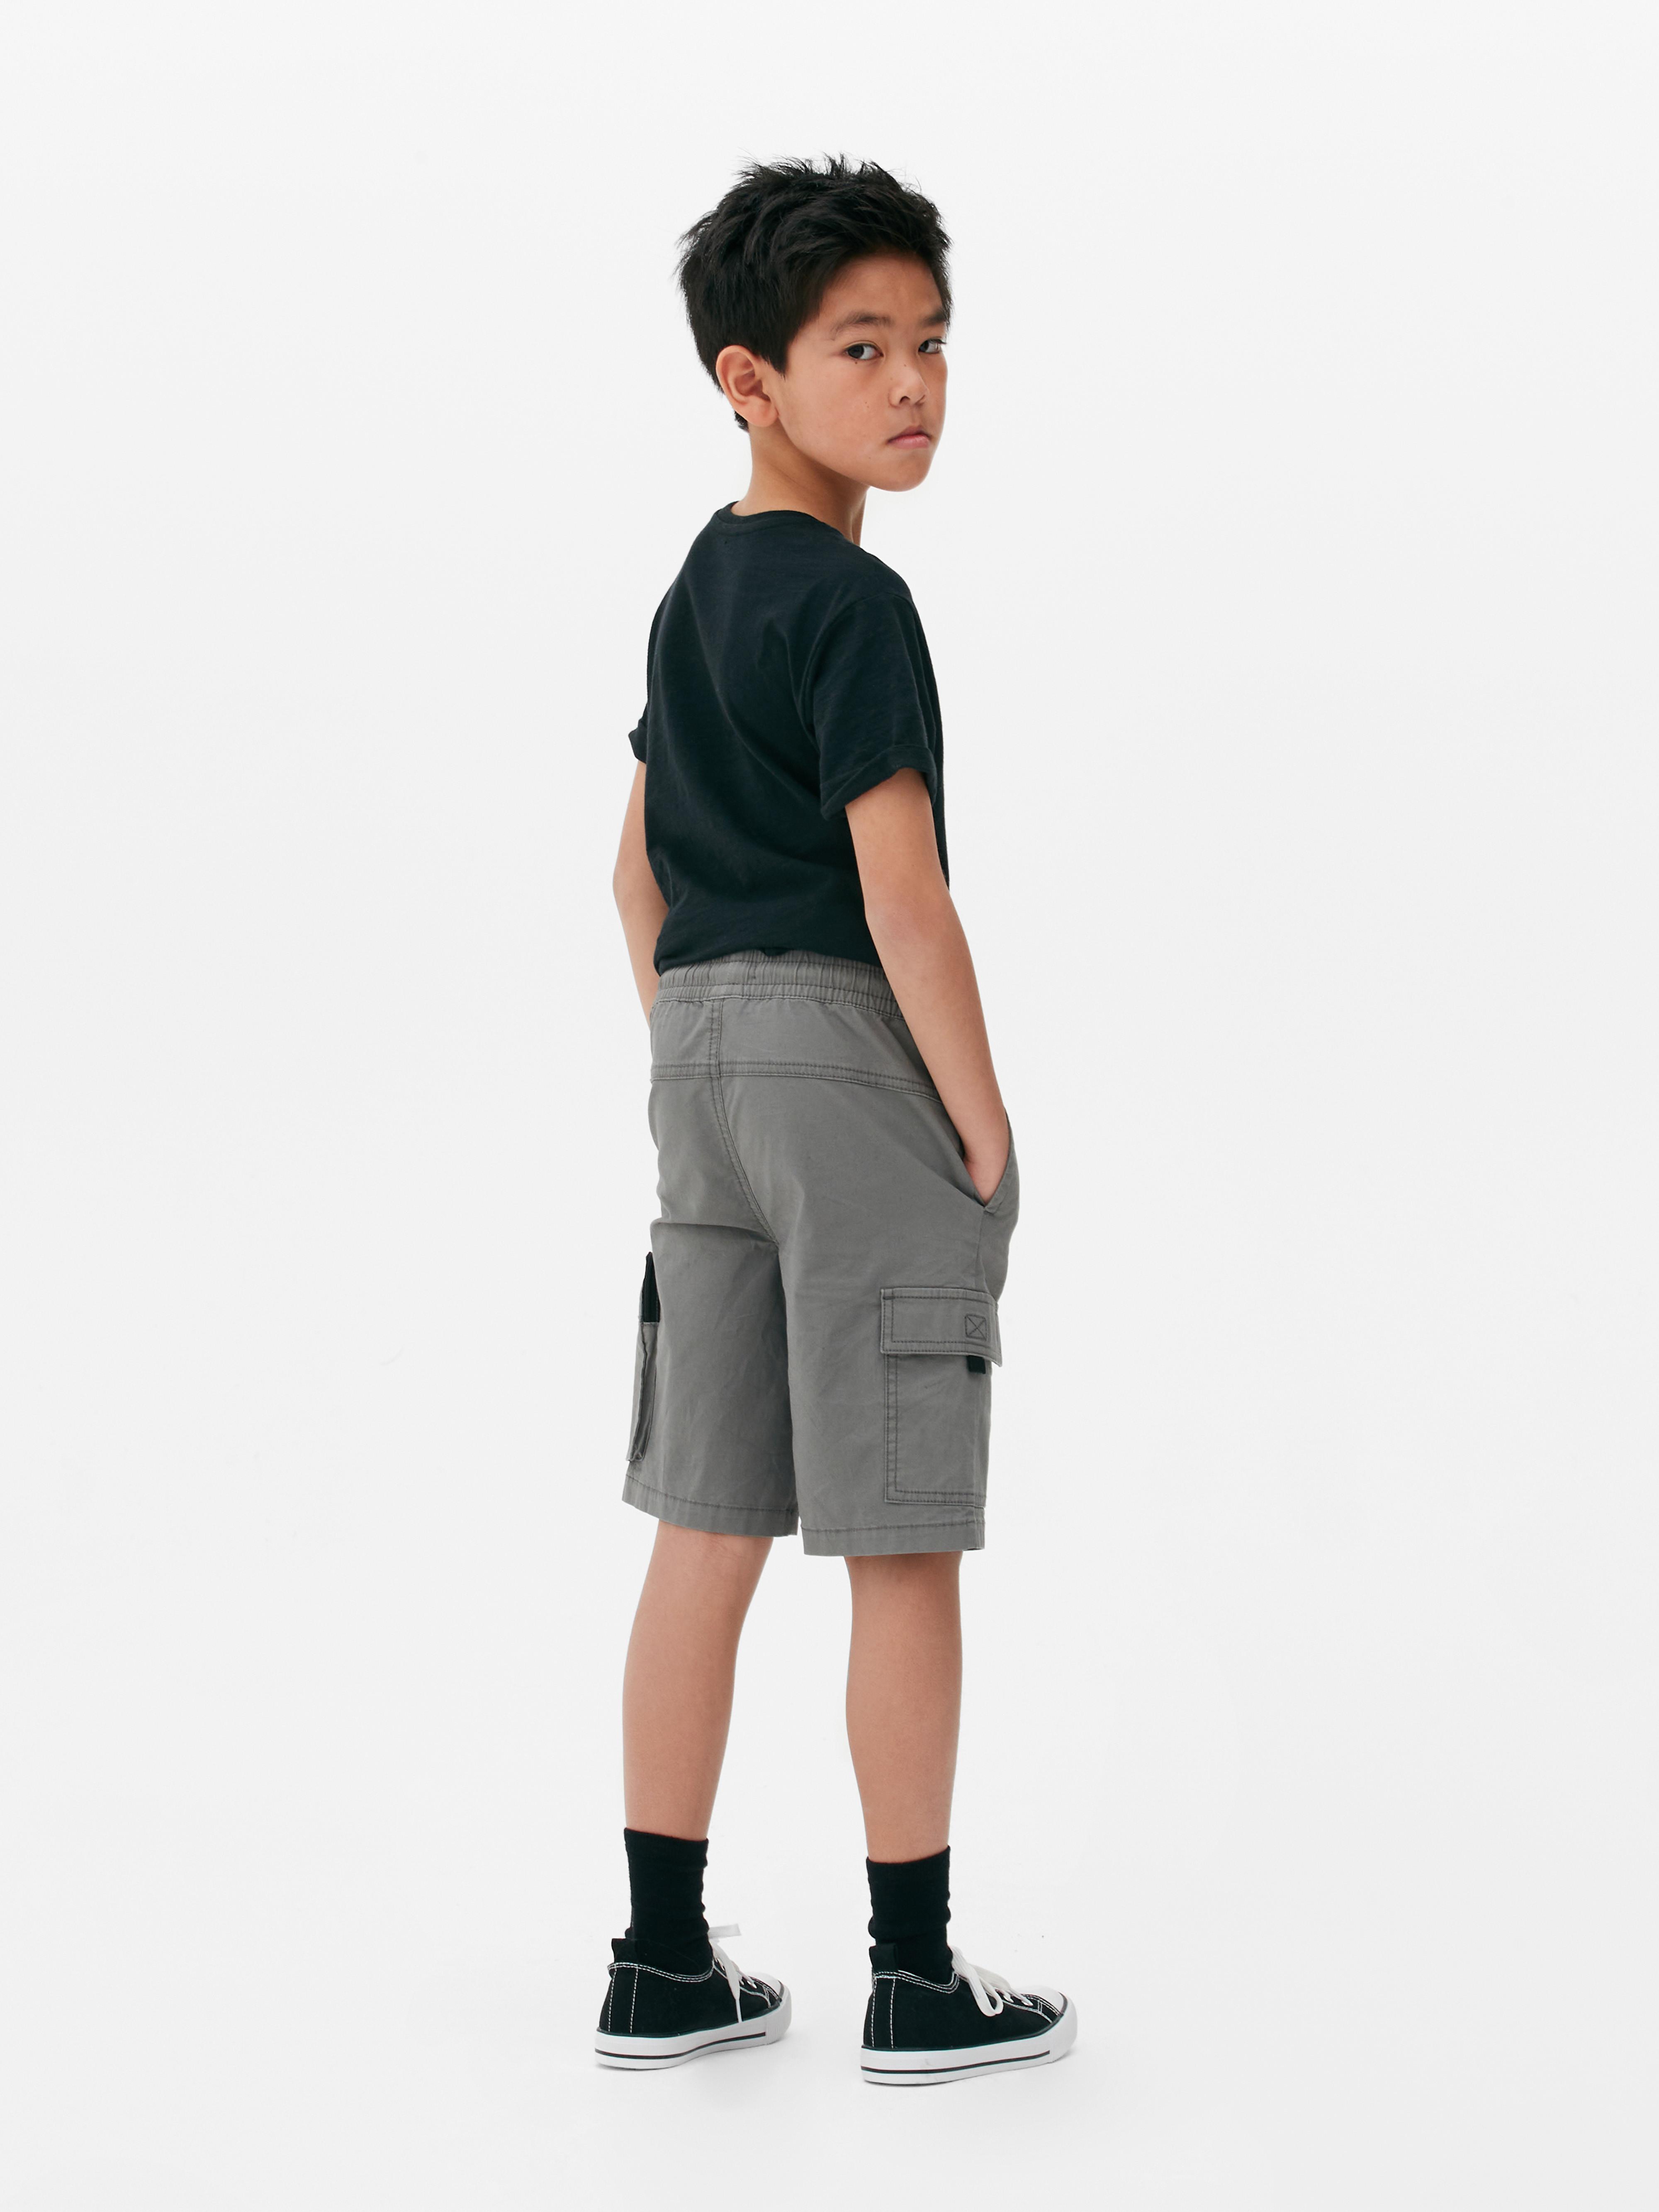 Pantalones cortos para niños | cortos vaqueros, chinos, de lino y Primark